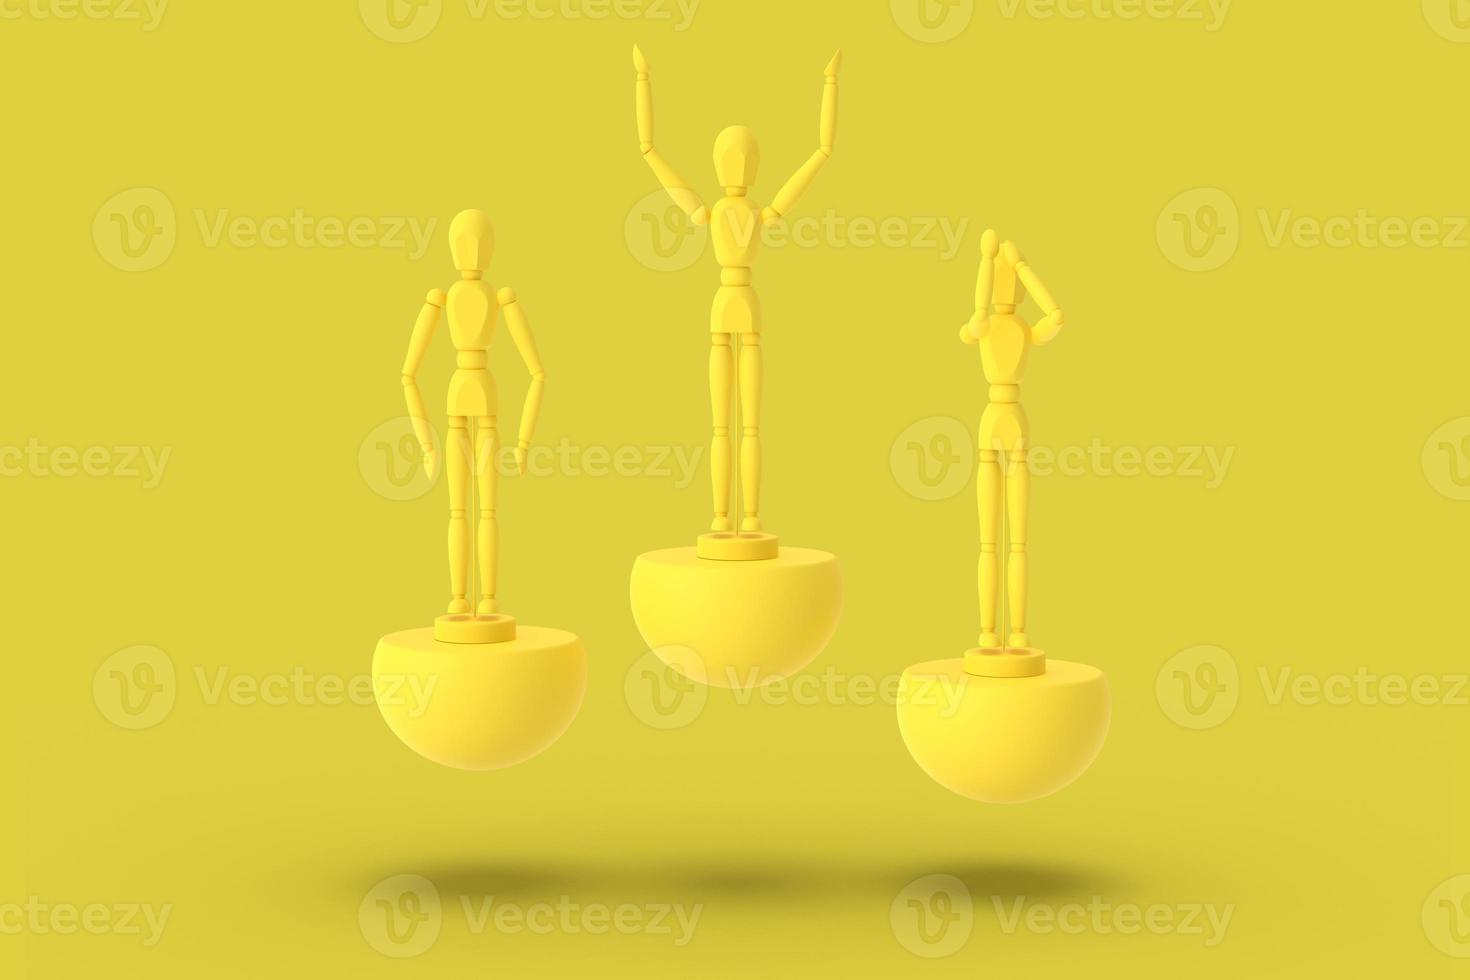 tres hombres de juguete de color amarillo sobre un pedestal abstracto deportivo. foto